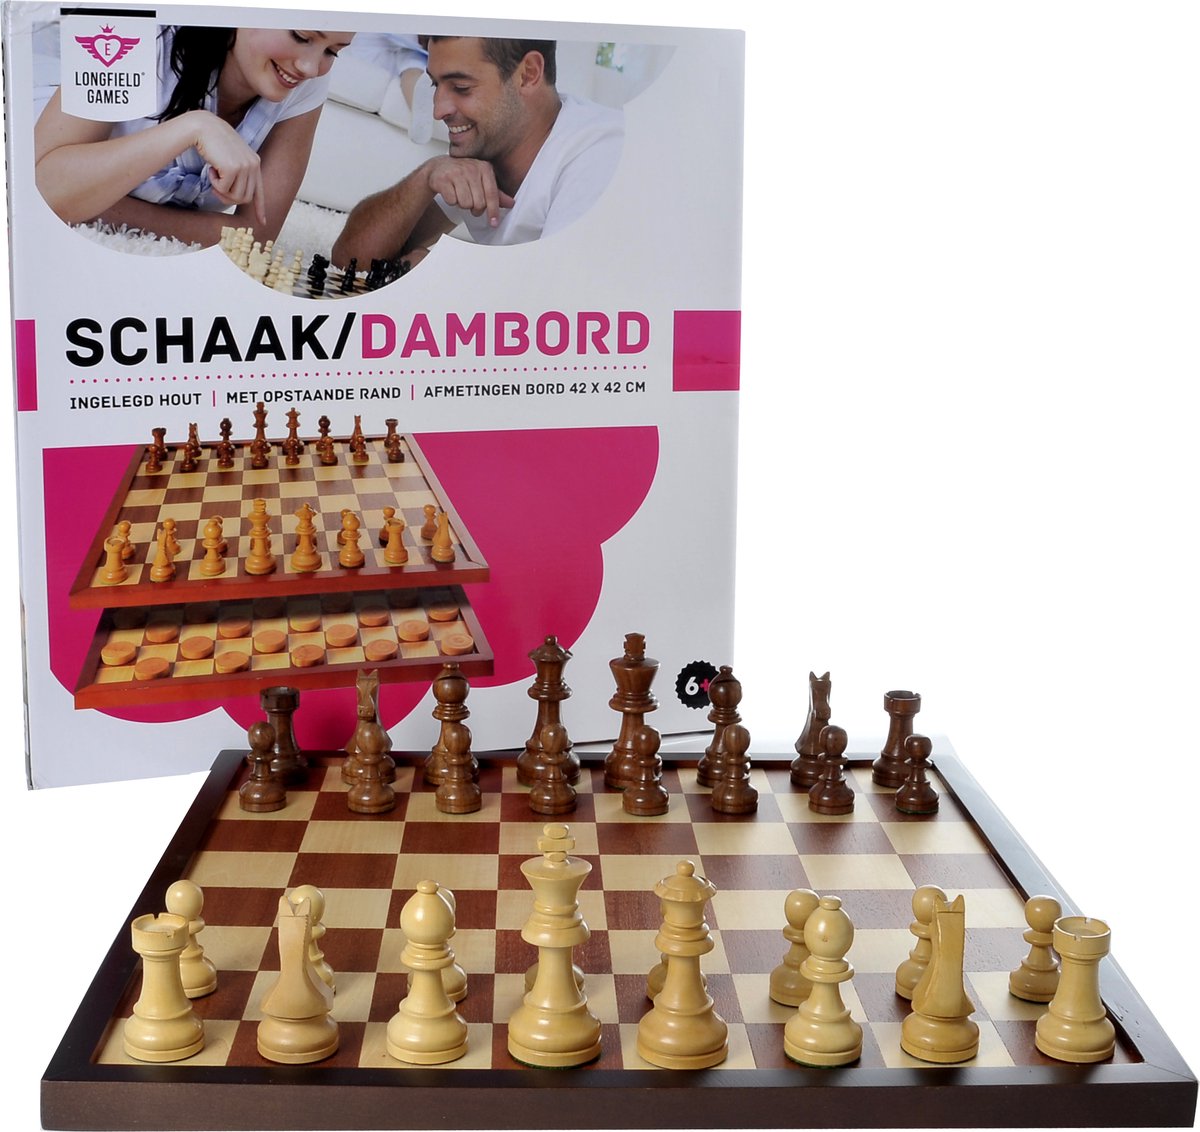 Markeer oven Missionaris Luxe schaakbord/dambord inclusief schaakstukken en damstenen. -  Sport4clubs.nl sportartikelen